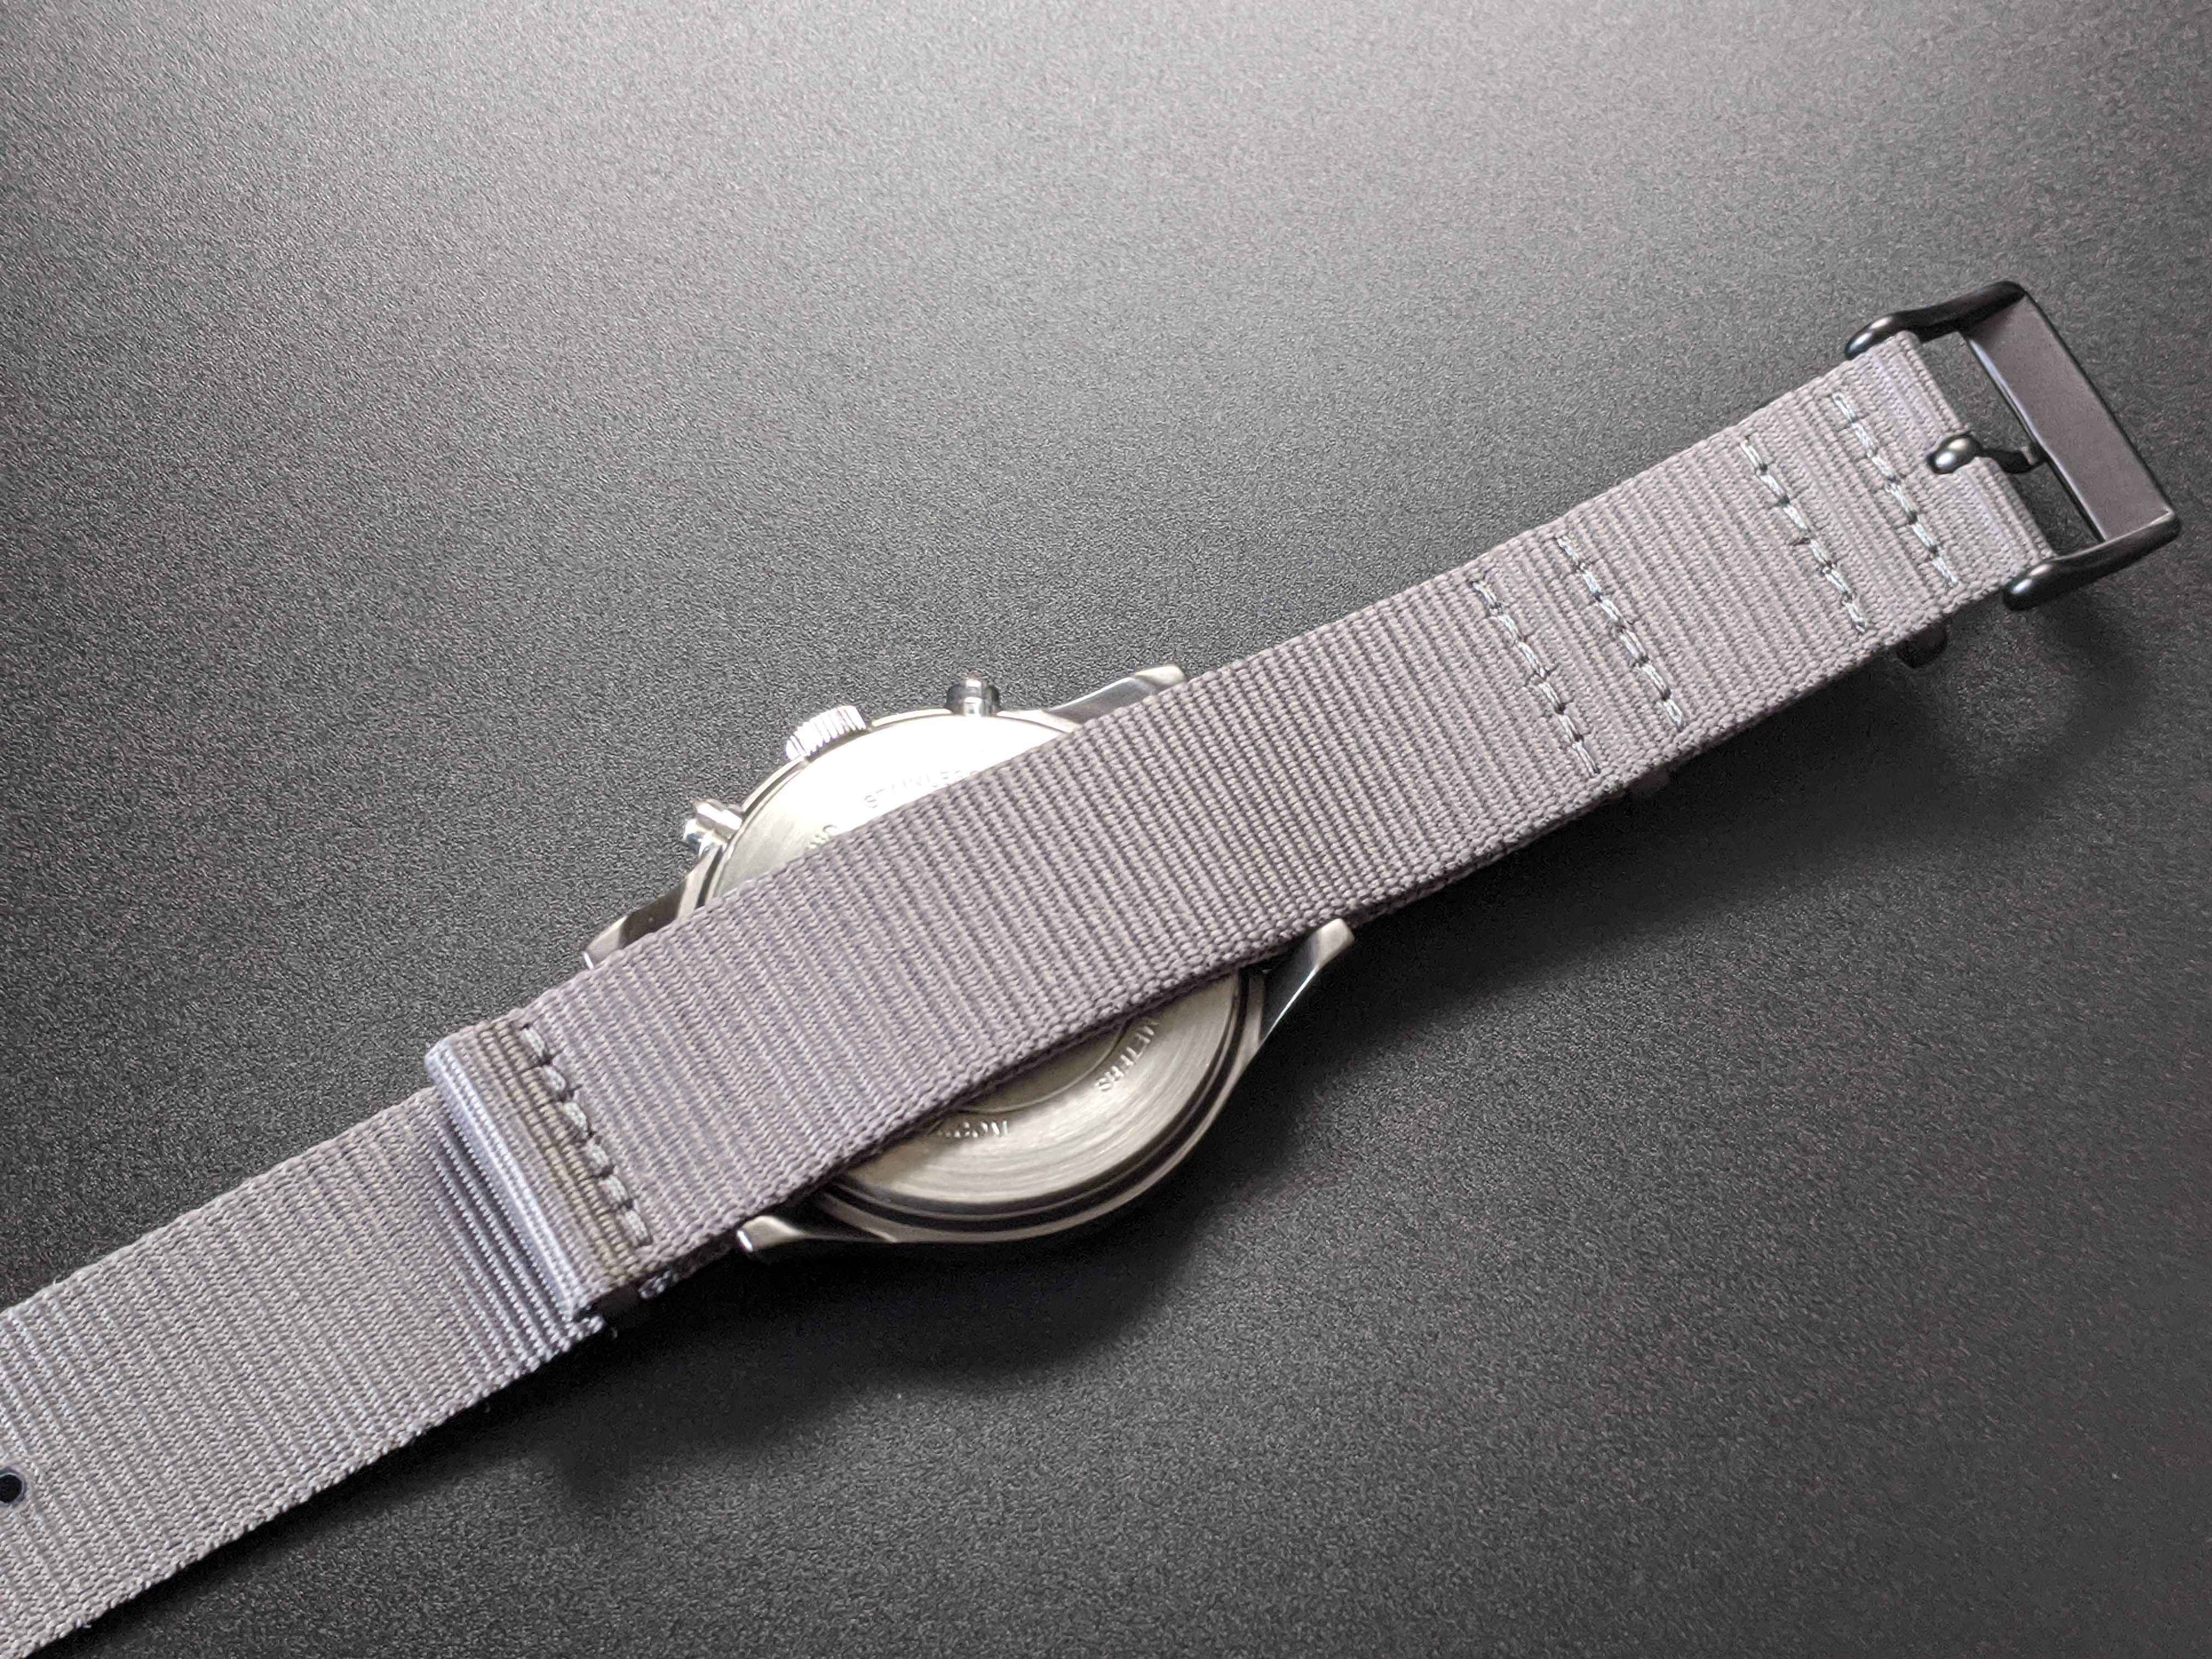 Часы Timex MK1 Chronograph Aluminum Case 40mm, с хронографом